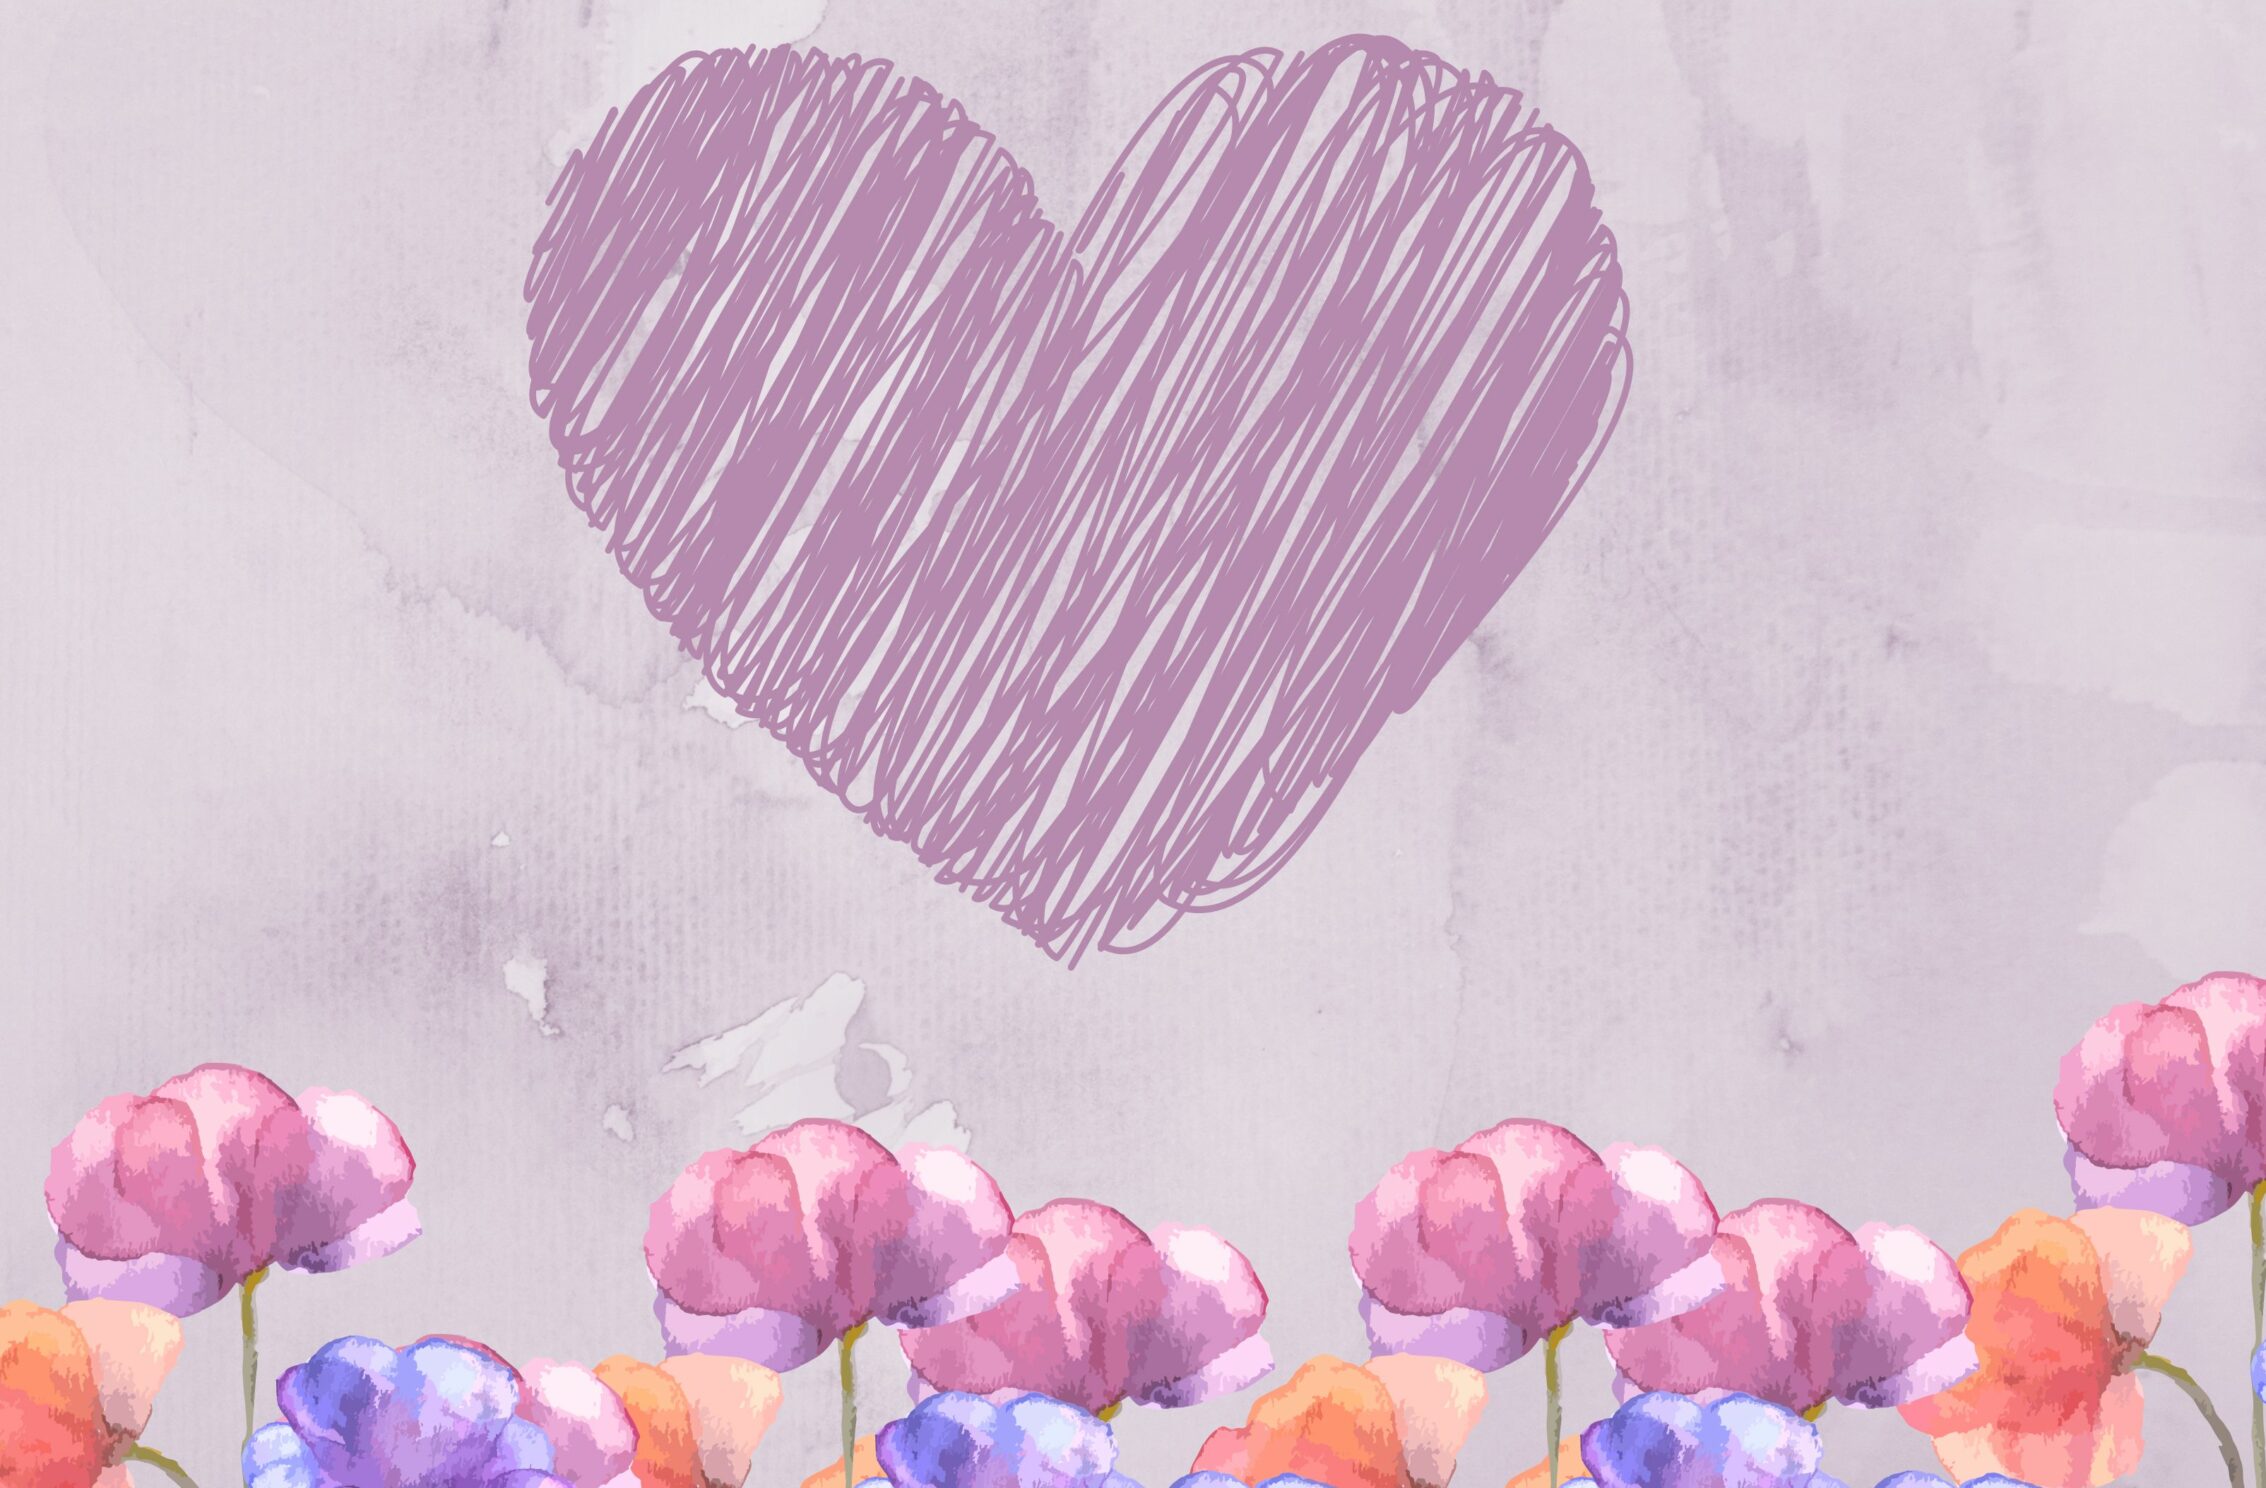 2266x1488 iPad Mini wallpapers Heart Floral Pastels Ipad Wallpaper 2266x1488 pixels resolution